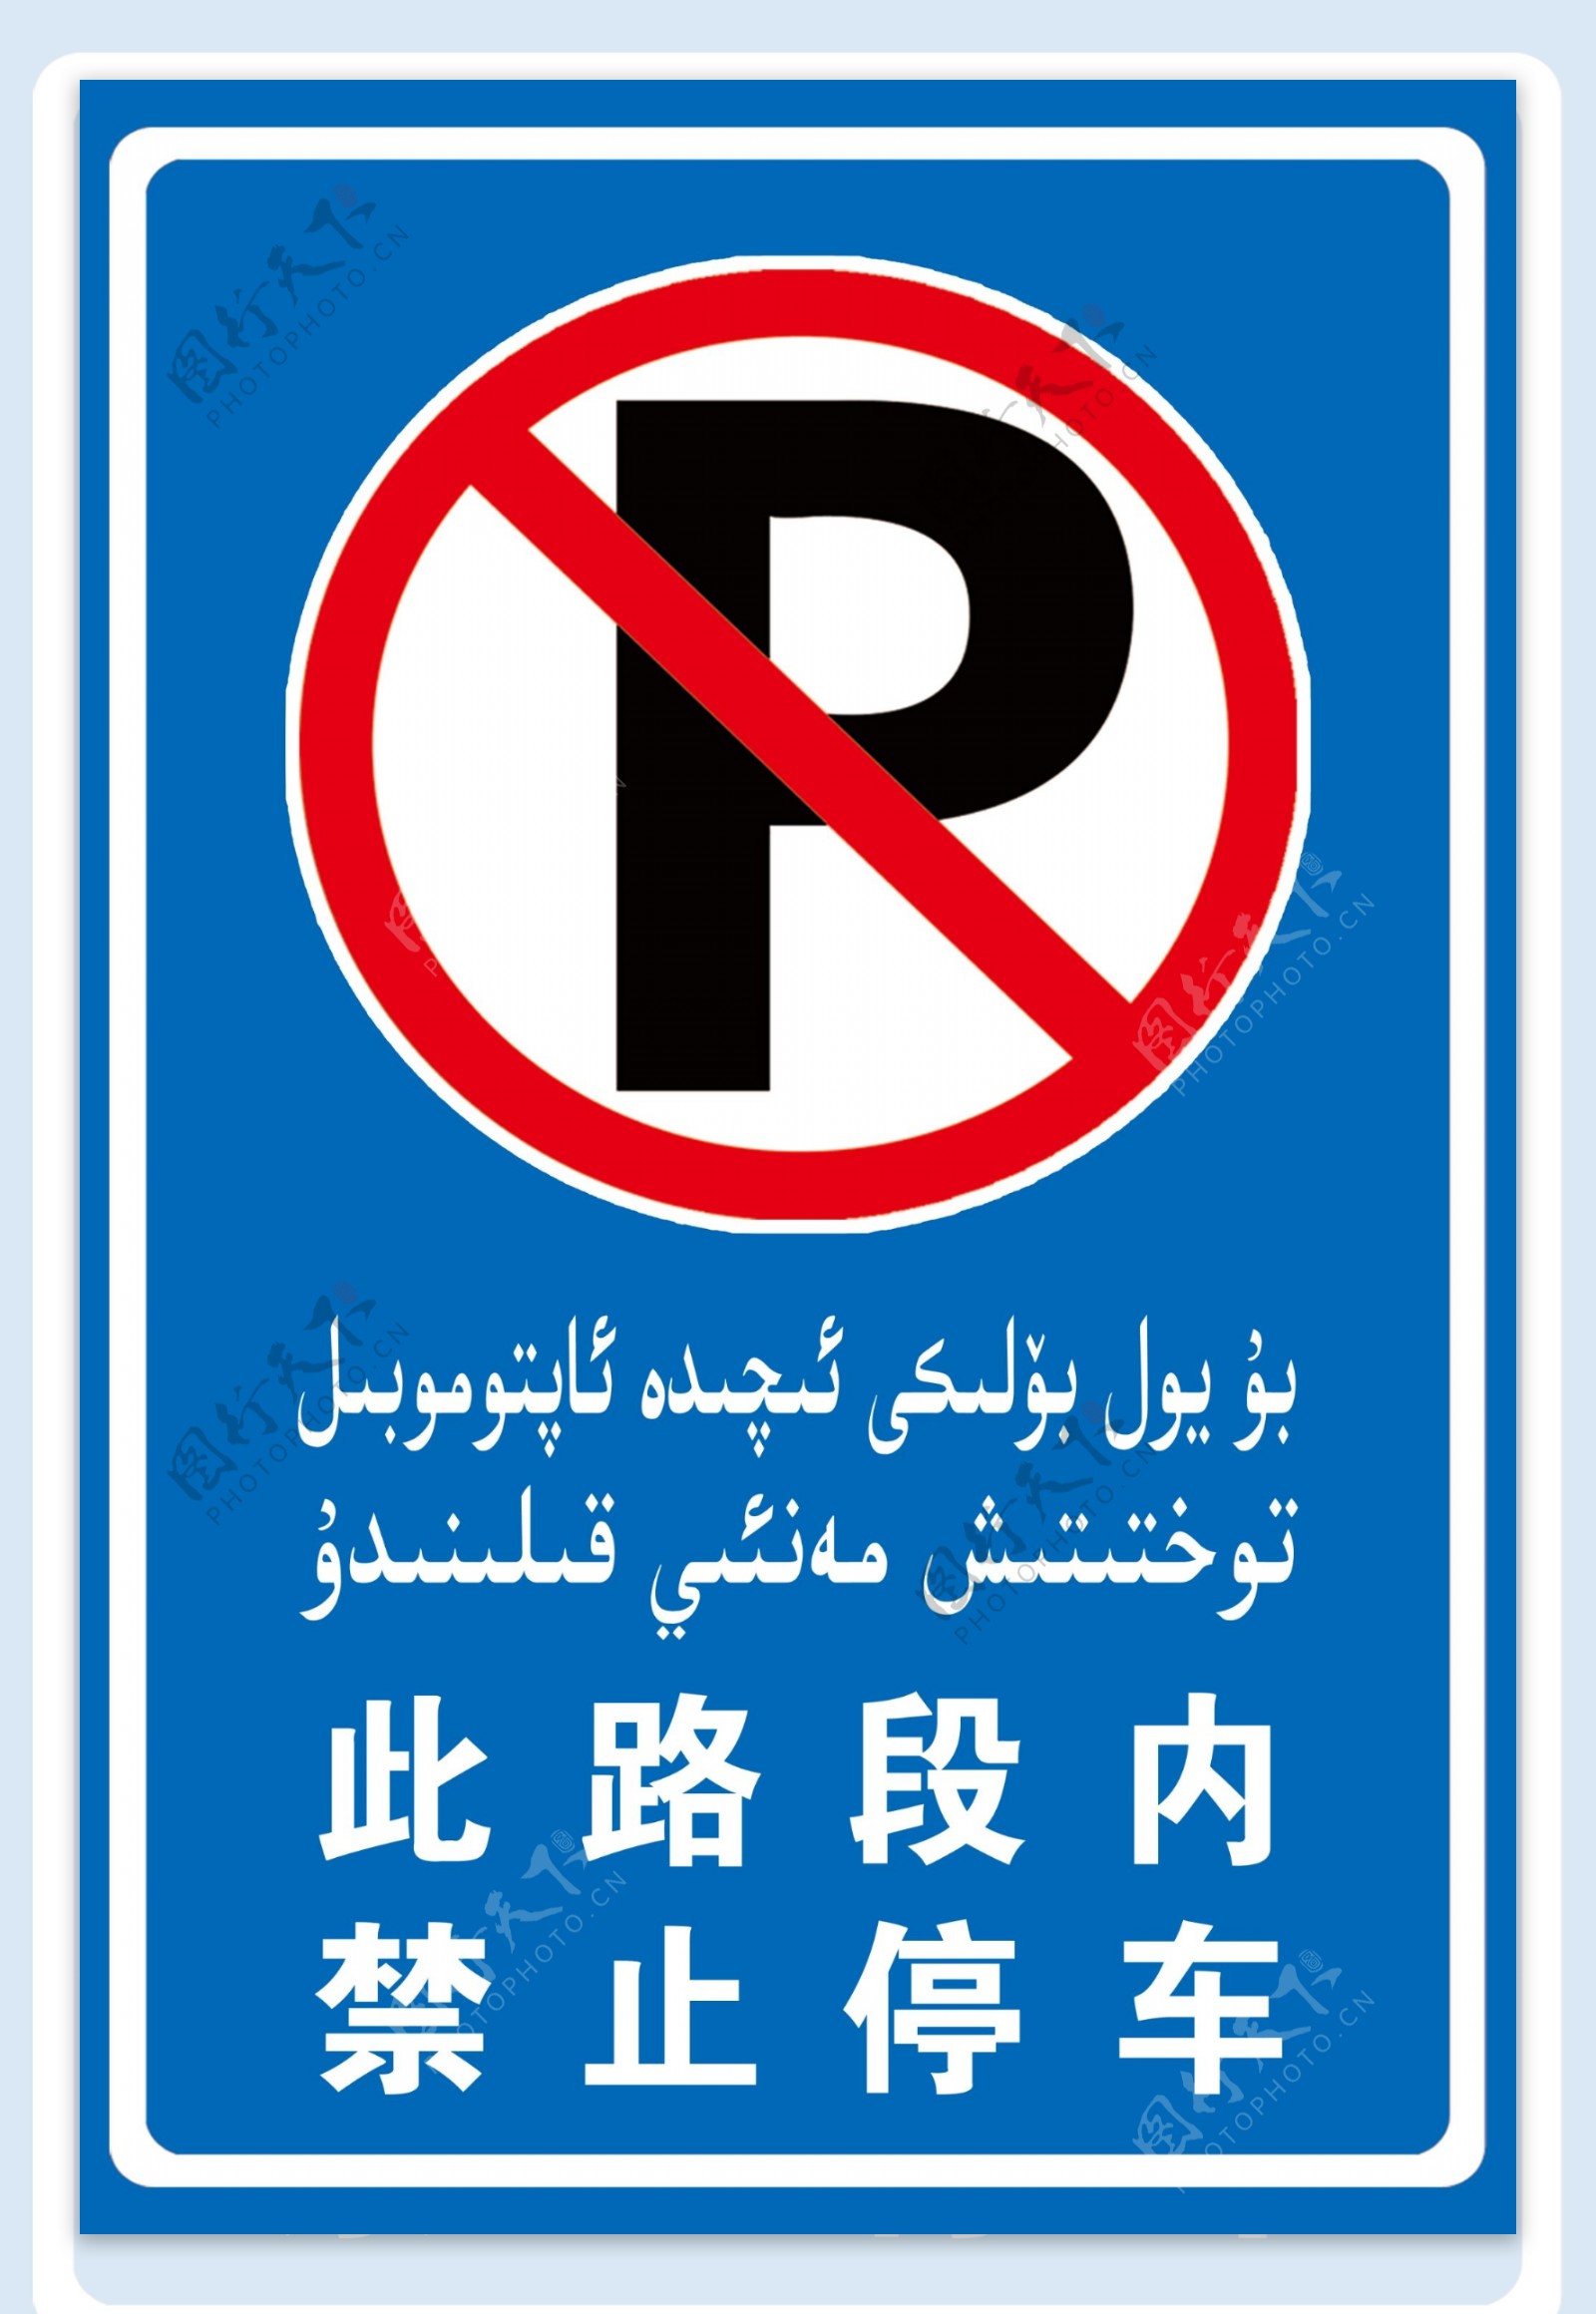 此路段内禁止停车